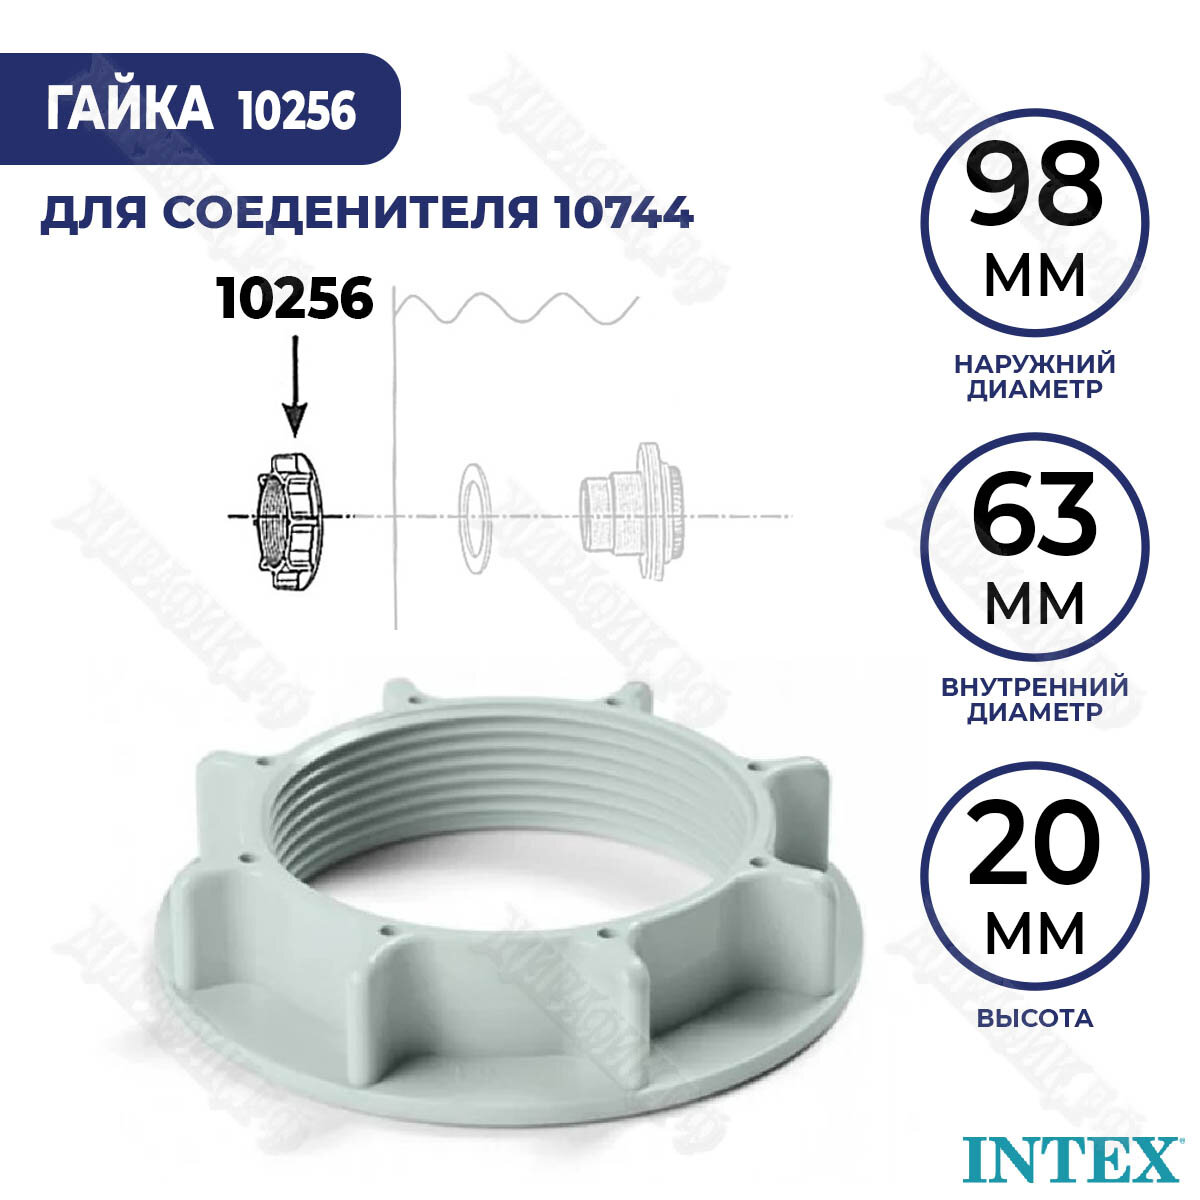 Гайка для соединителя 38 мм Intex 10256